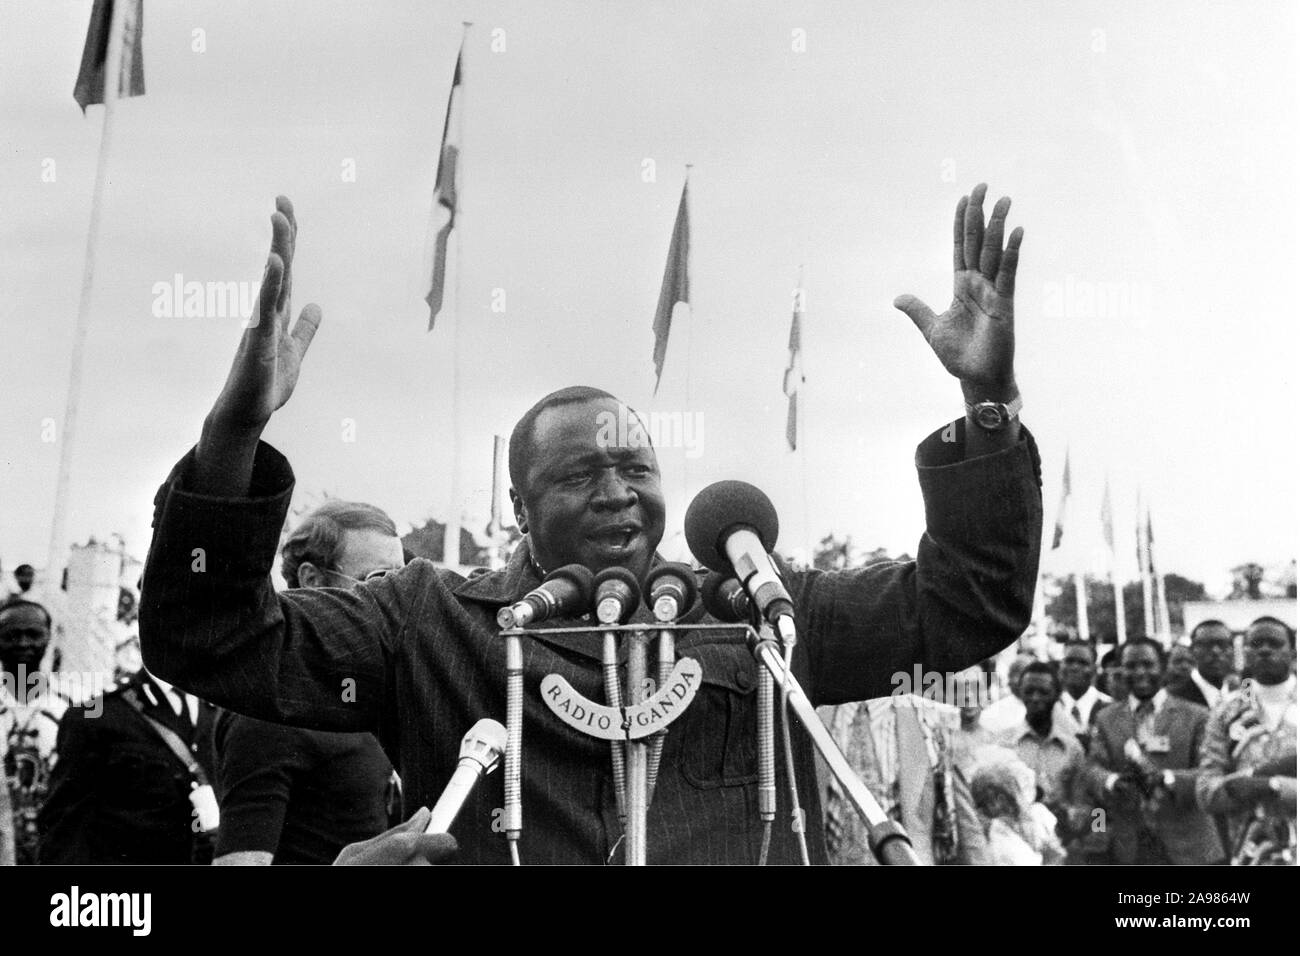 Präsident von Uganda Idi Amin Dada (C) Gesten bei der Adressierung der Medien am 28. Juli 1975 in Kampala während der Organisation für Afrikanische Einheit (OUA) Gipfel. Die Idi Amin Herrschaft des Terrors von 1971 dauerte, als er die Macht ergriff von Milton Obote, zum 13. April 1979, bei der Tansanischen Truppen und verbannt die Ugander stürmte Kampala und entfernt ihn von der Stromversorgung. Die selbsternannten Feldmarschall abgerechnet, dann im Exil in Saudi-Arabien. Während seiner Präsidentschaft gab es kontinuierliche Reports des weitverbreiteten Greueltaten. Stockfoto